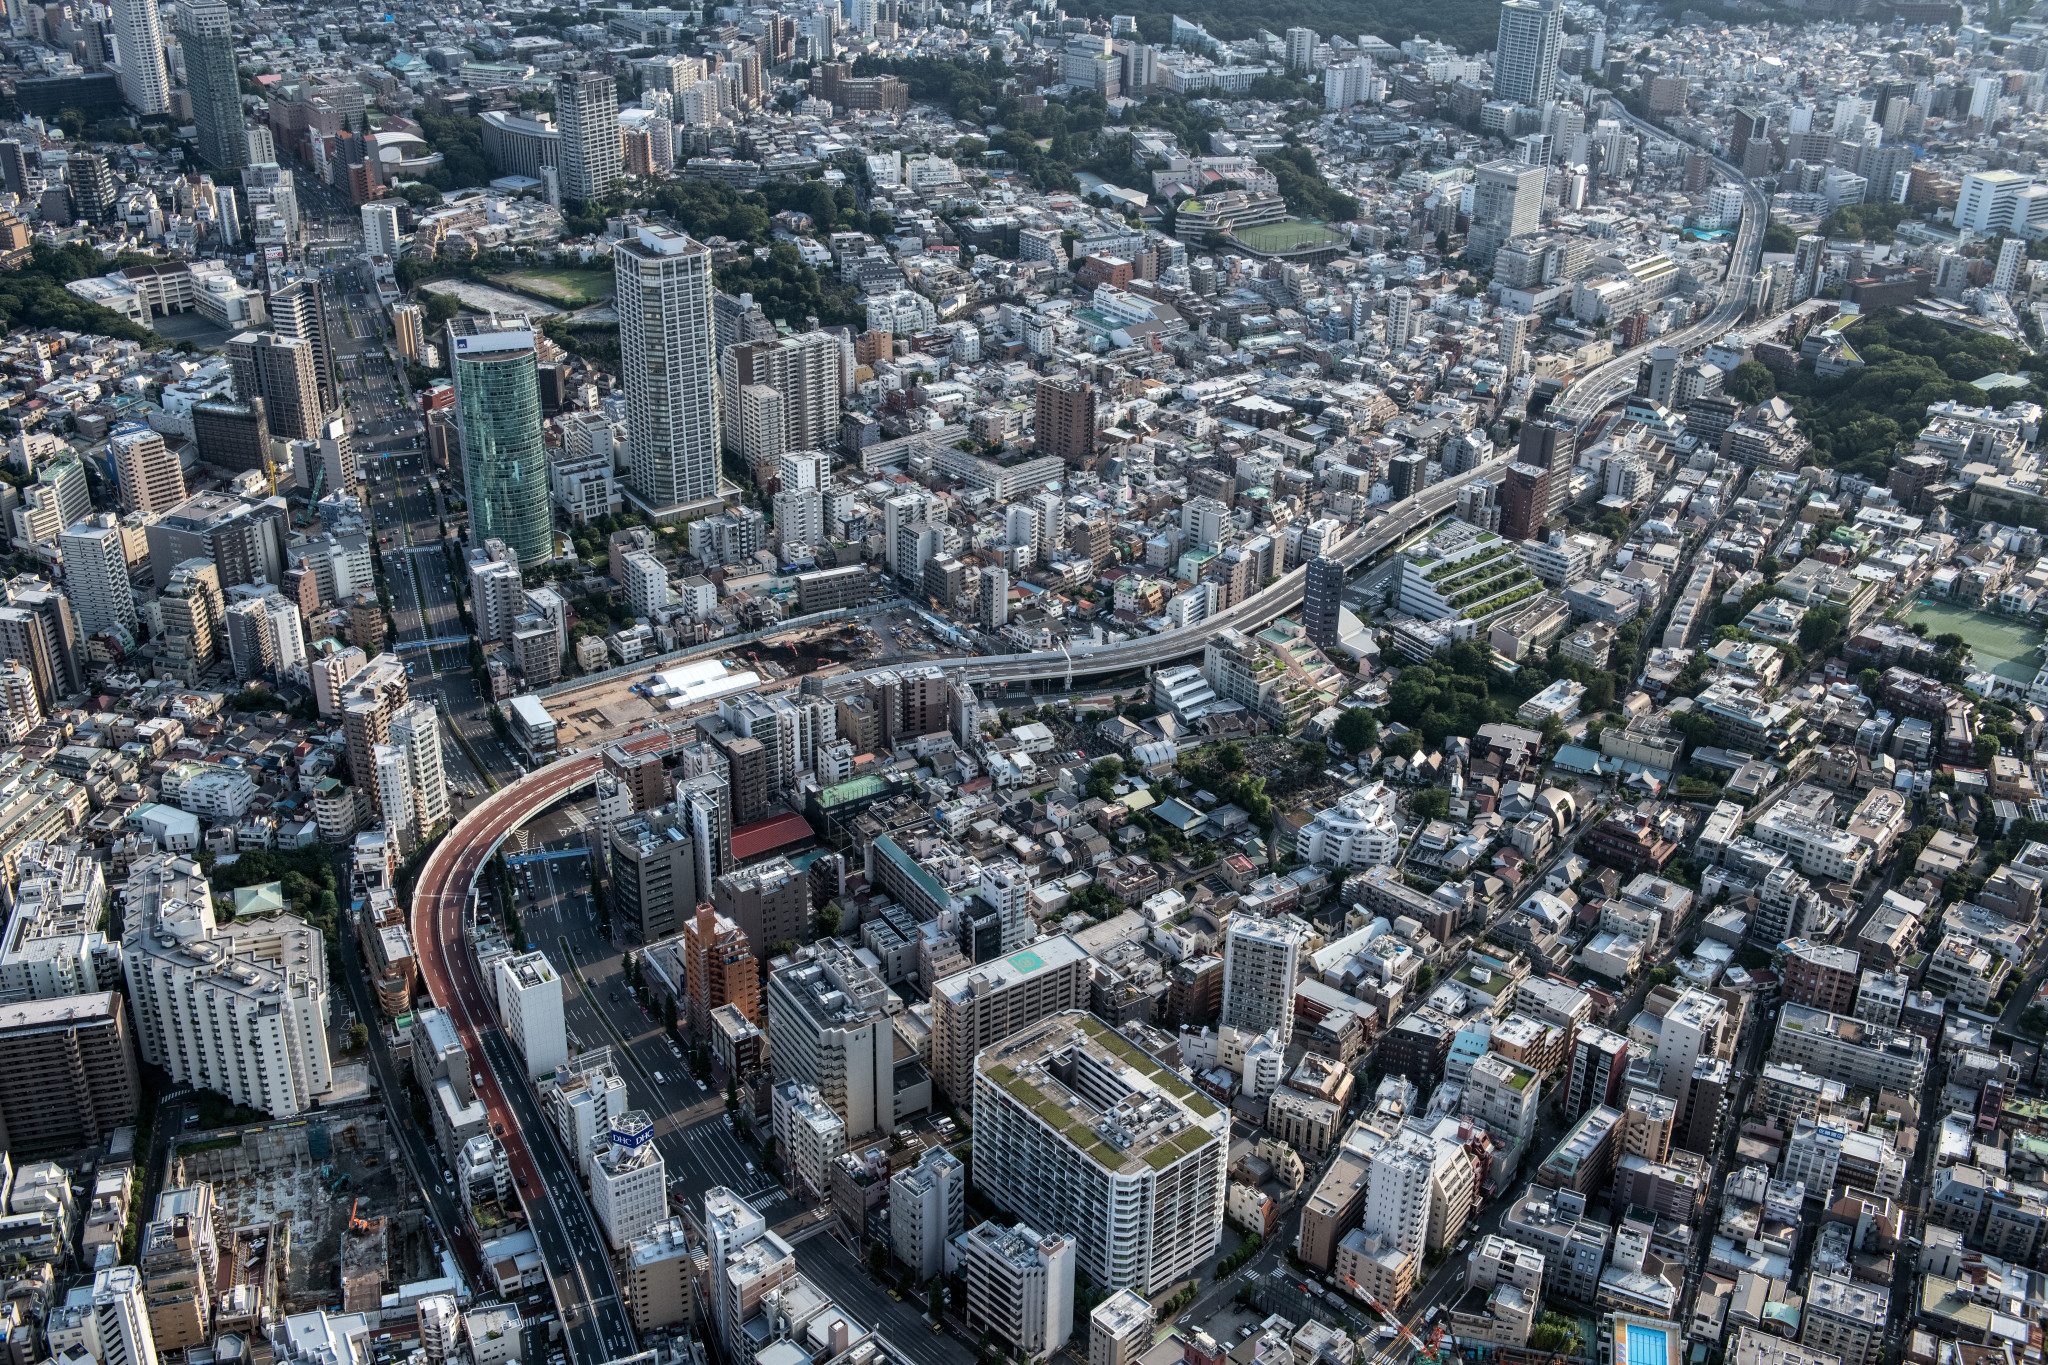 Huge traffic test held as part of bid to avoid Tokyo 2020 congestion